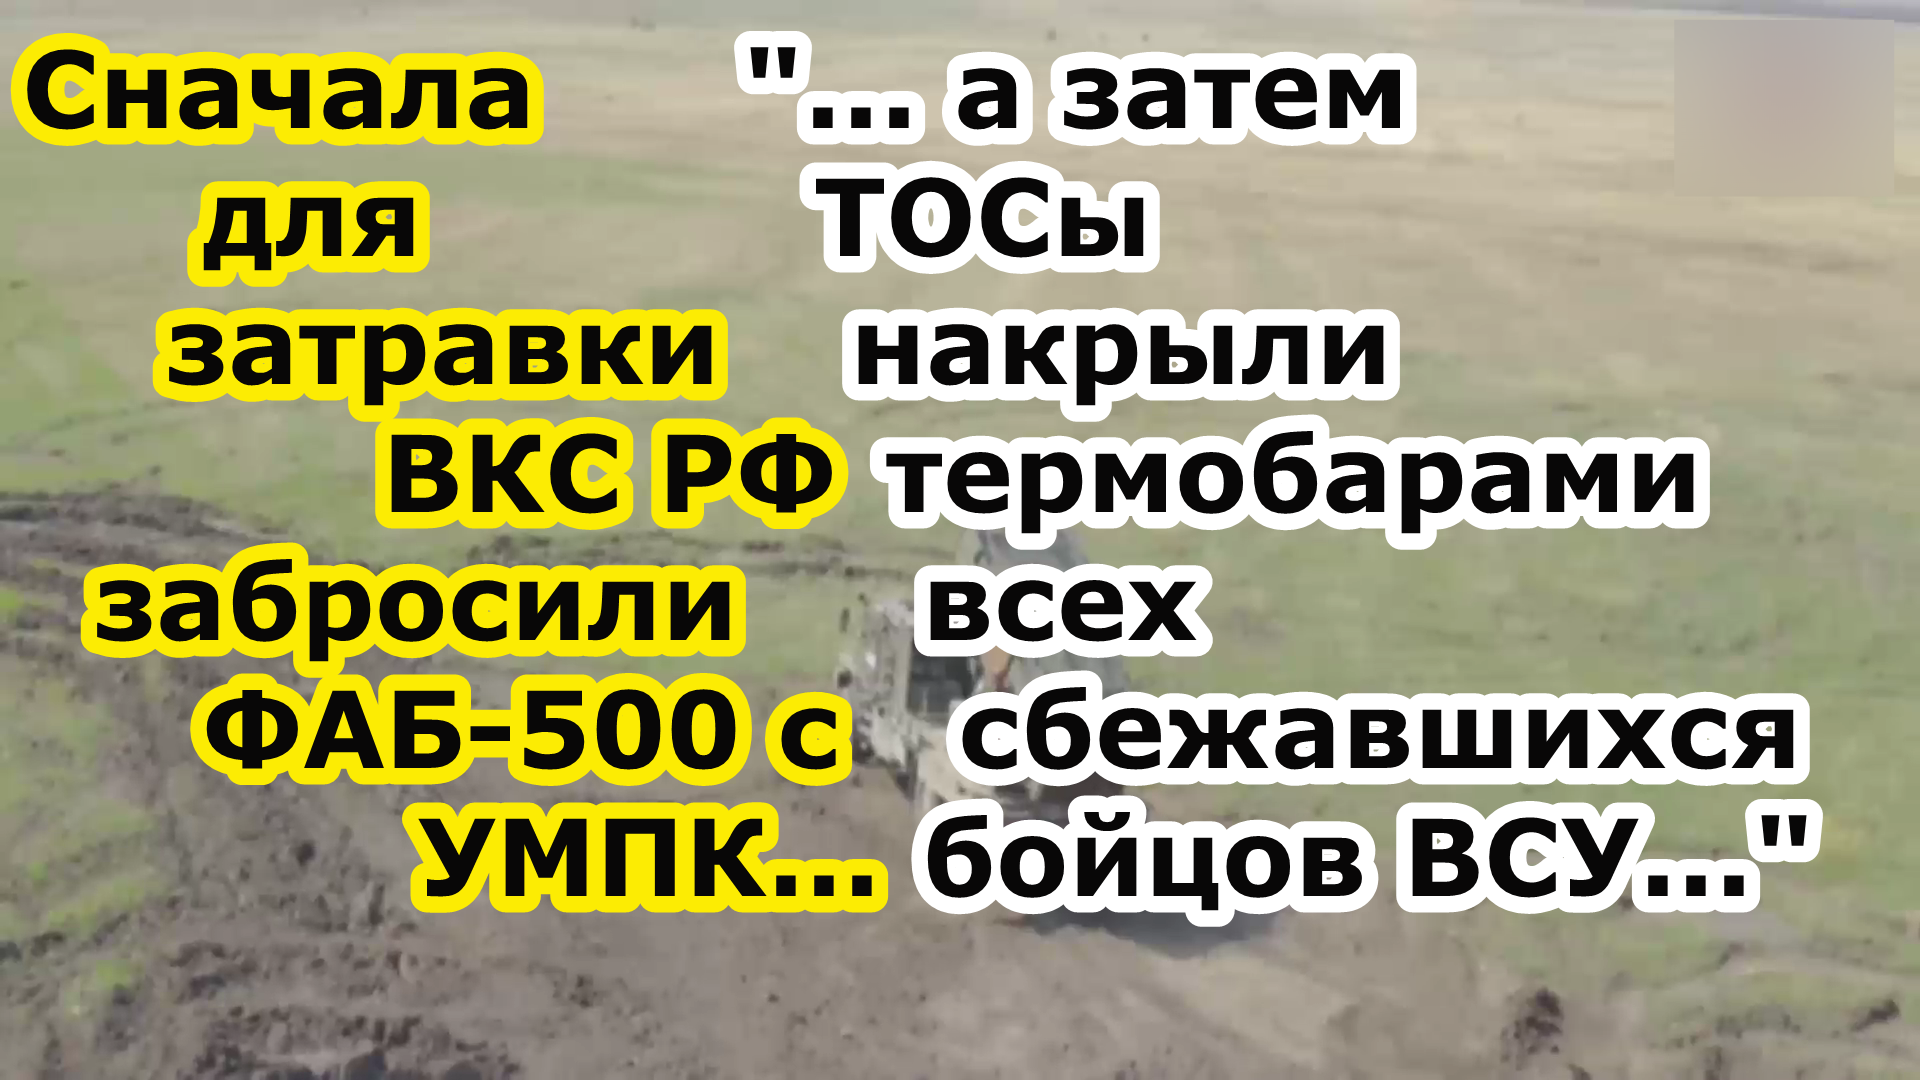 В Волчанске на элеватор ударил ФАБ 500 УМПК, а затем ТОС 1 1А или Тосочка накрыла всех уцелевших